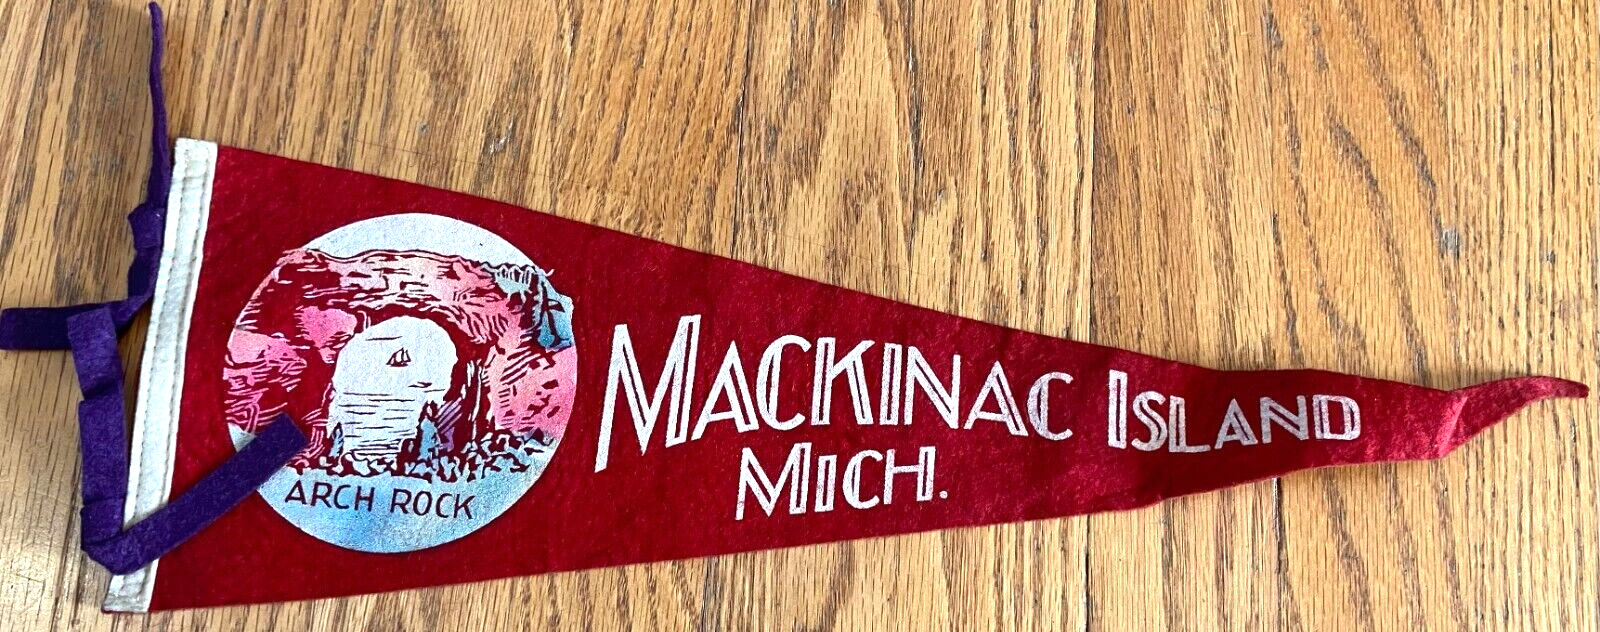 Vintage Mackinac Island Michigan Arch Rock Red Felt Pennant Flag 17x6